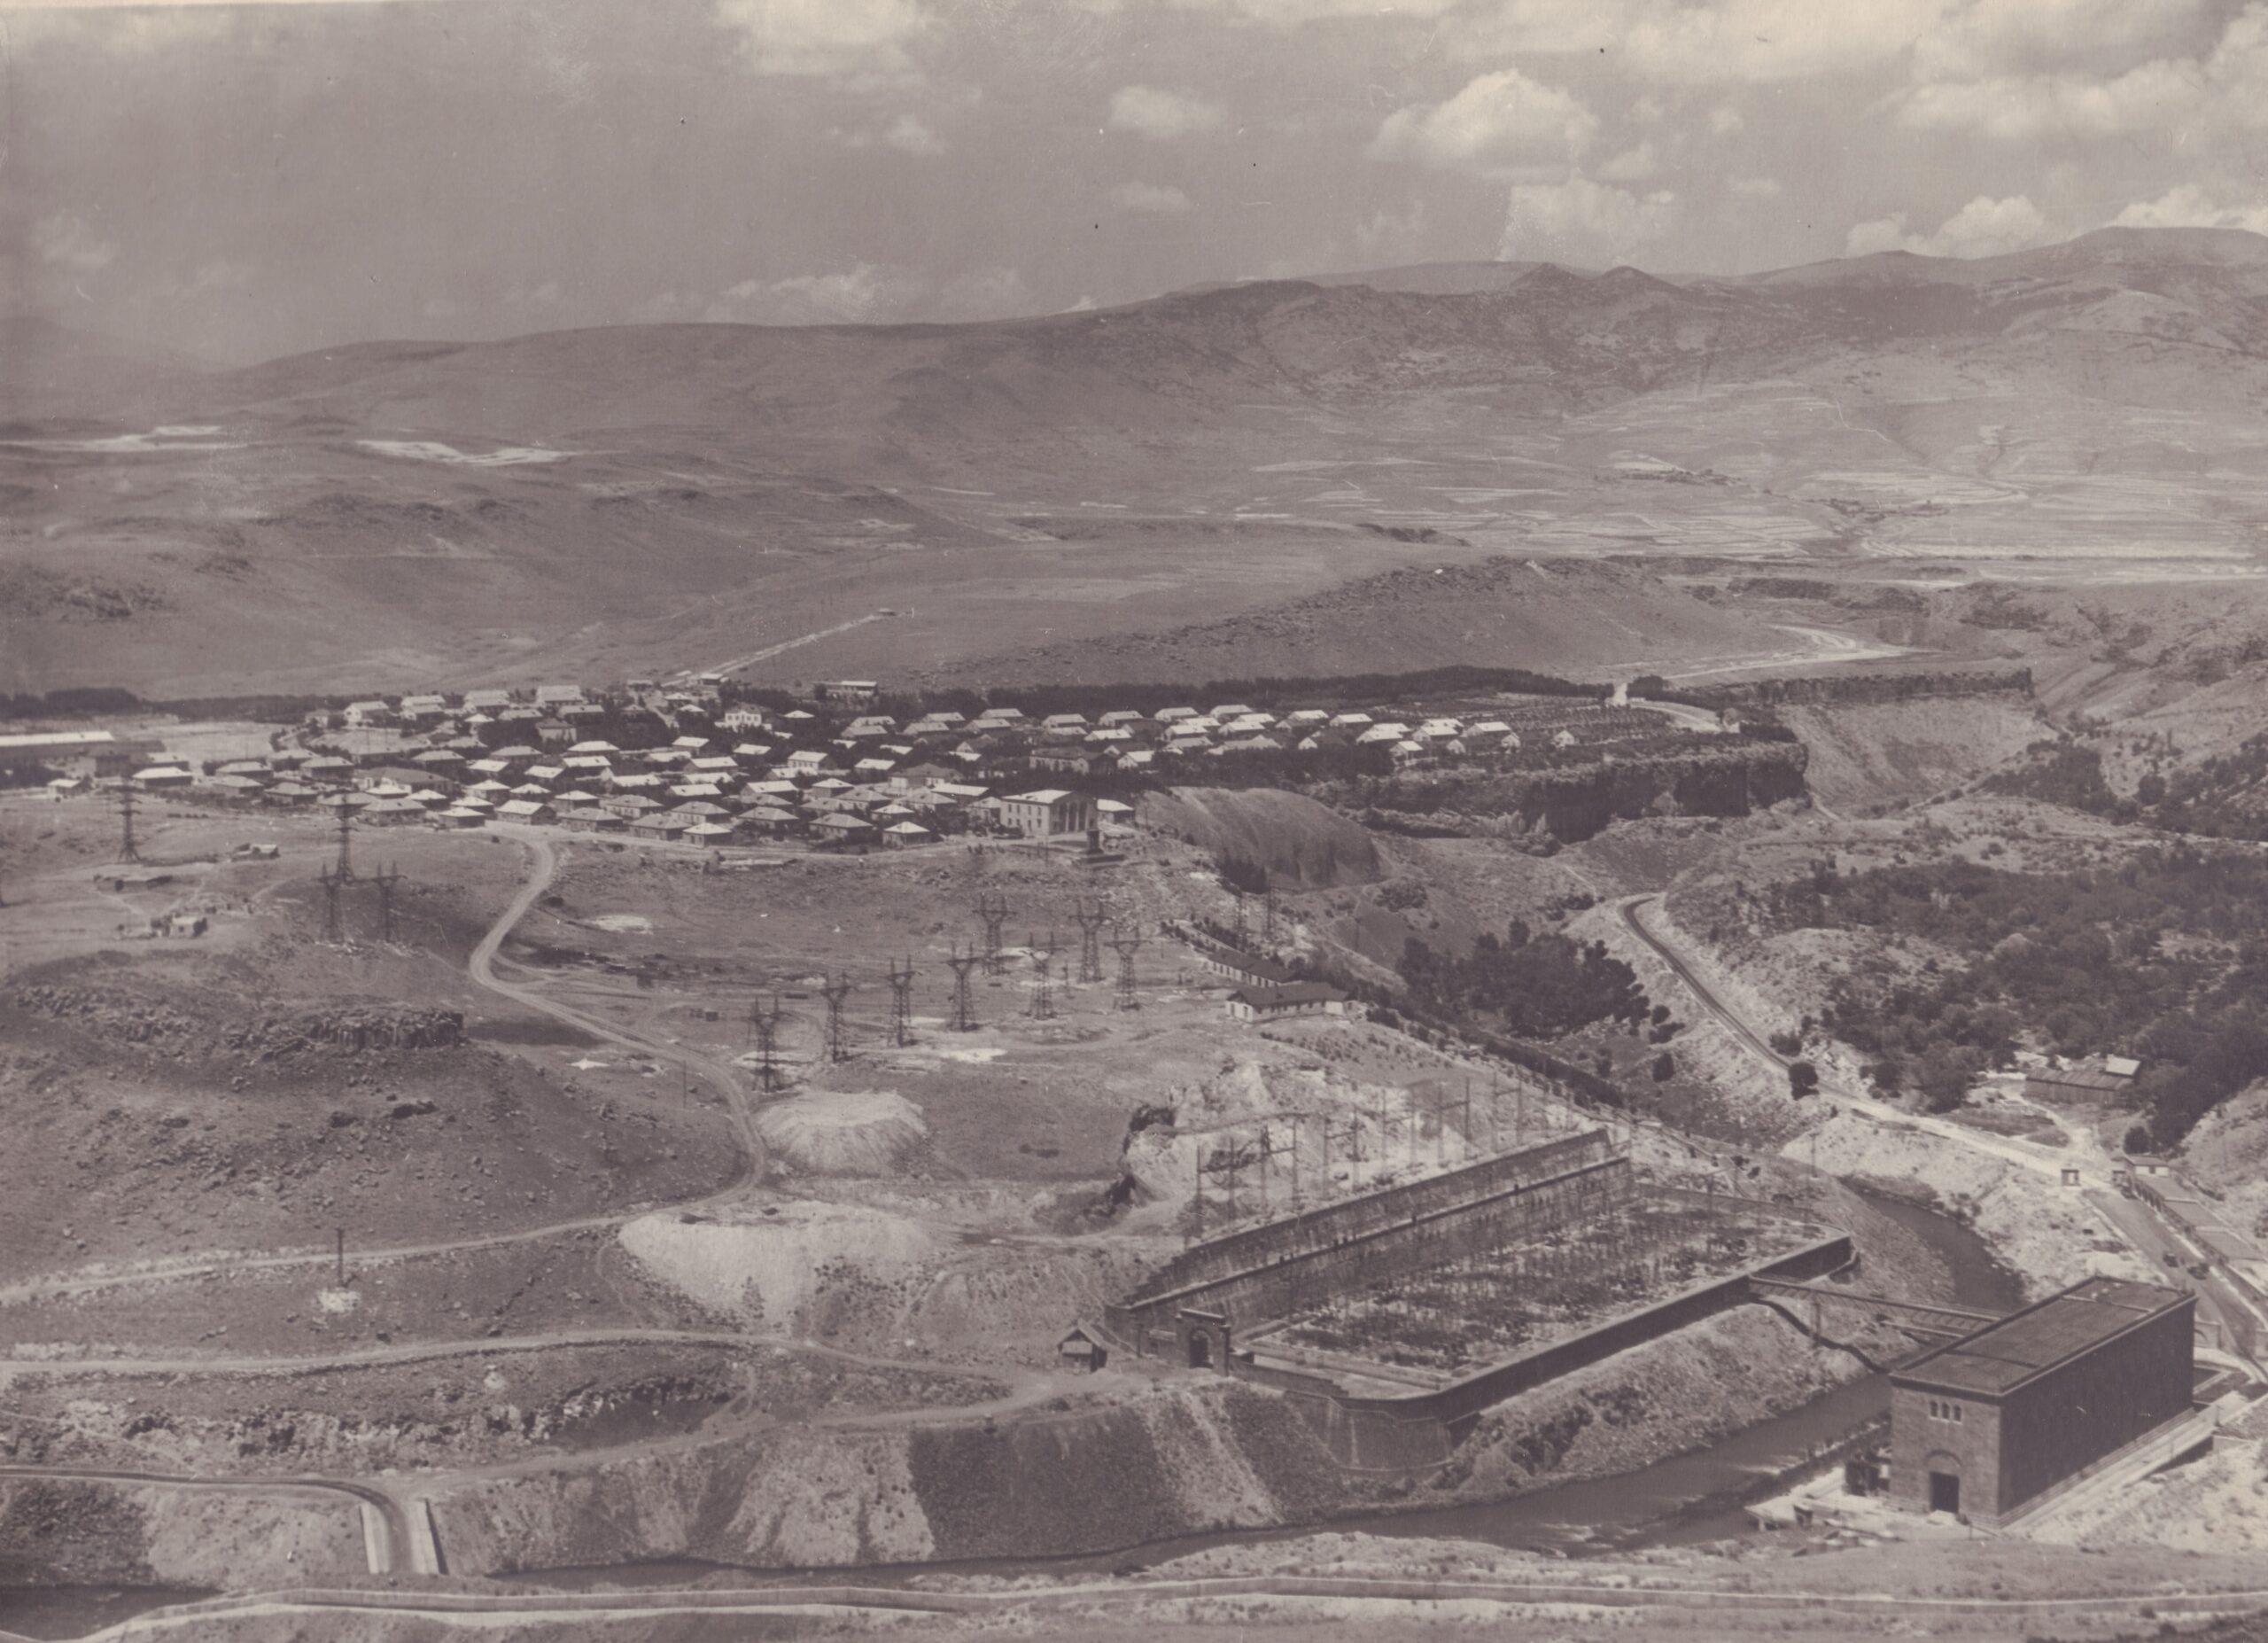 Հիդրոէլեկտրակայանի համալիրը և Լուսակերտ գյուղը (այժմ՝ Արգել)